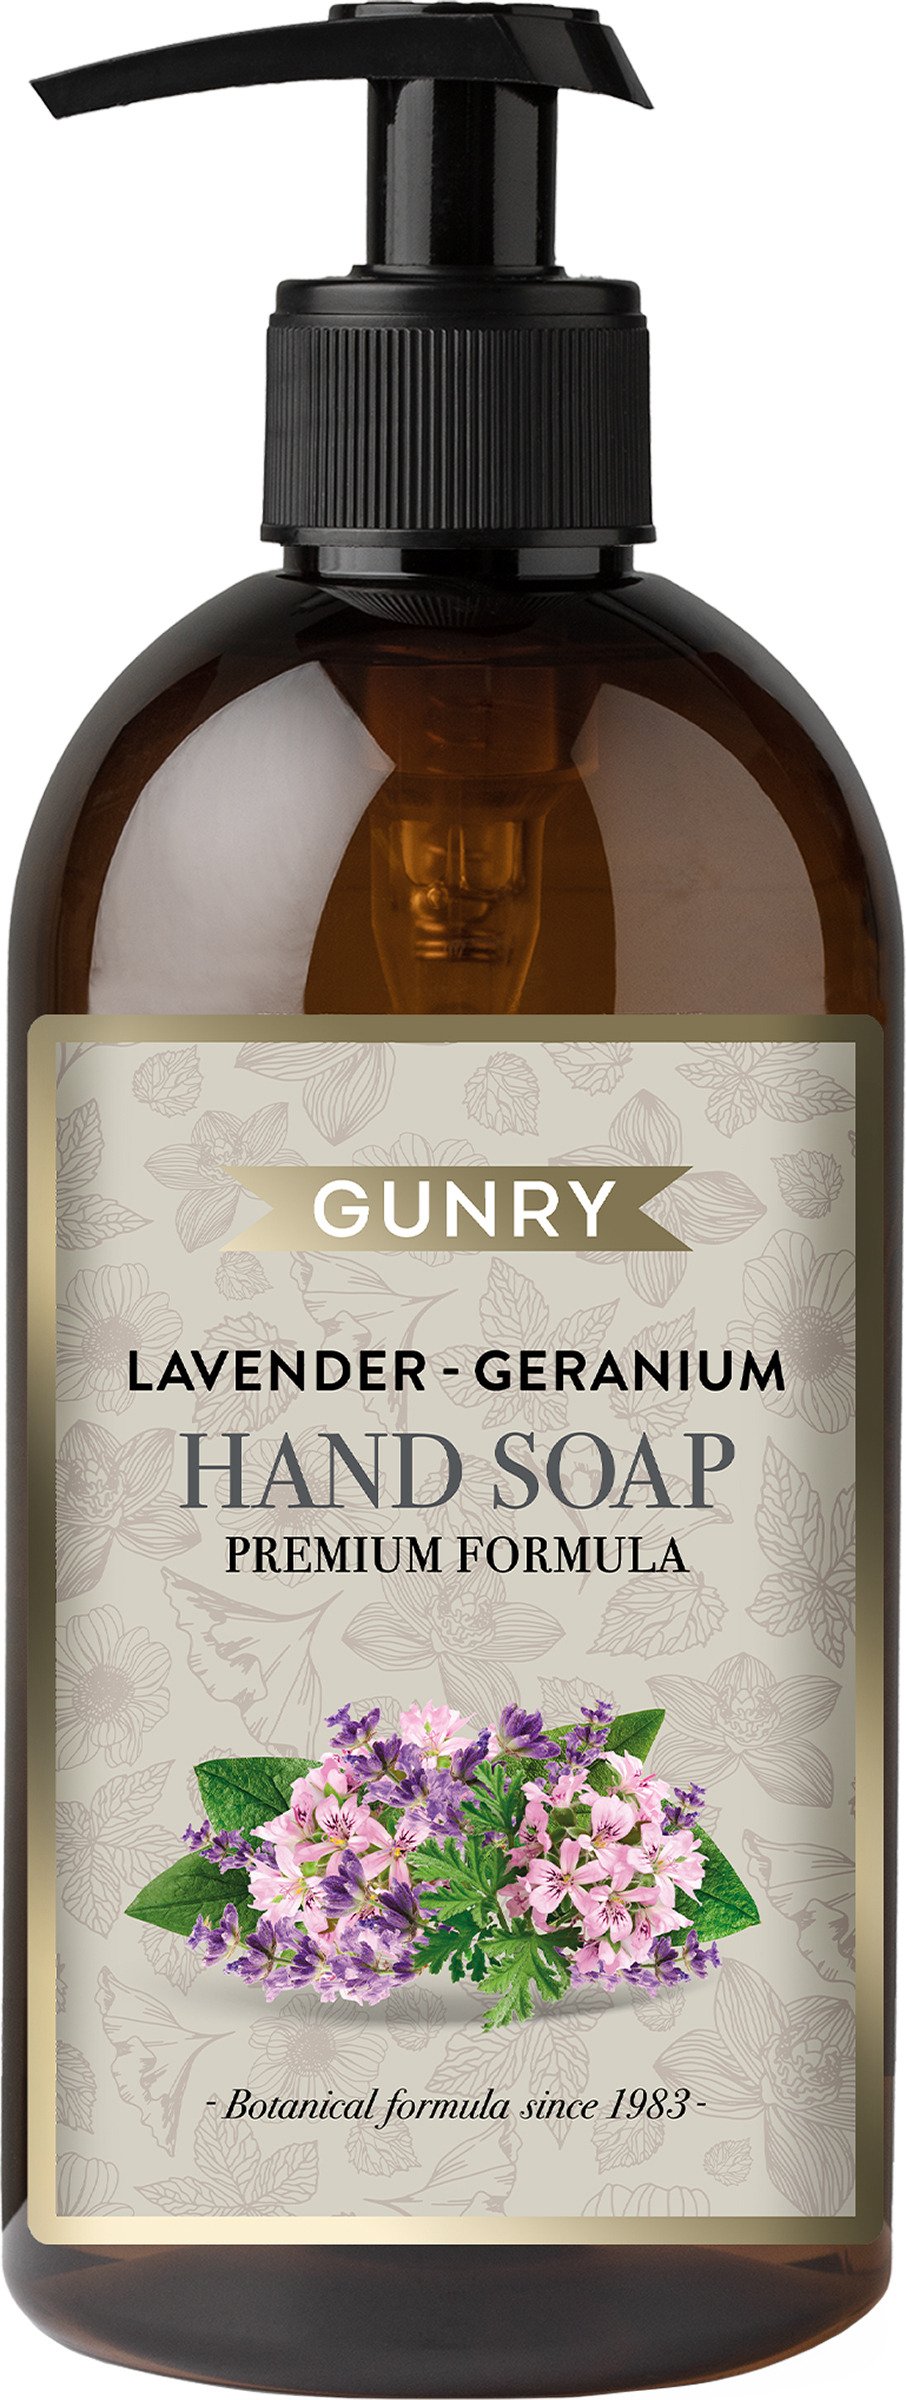 Gunry Hand Soap Lavendel & Geranium 500 ml